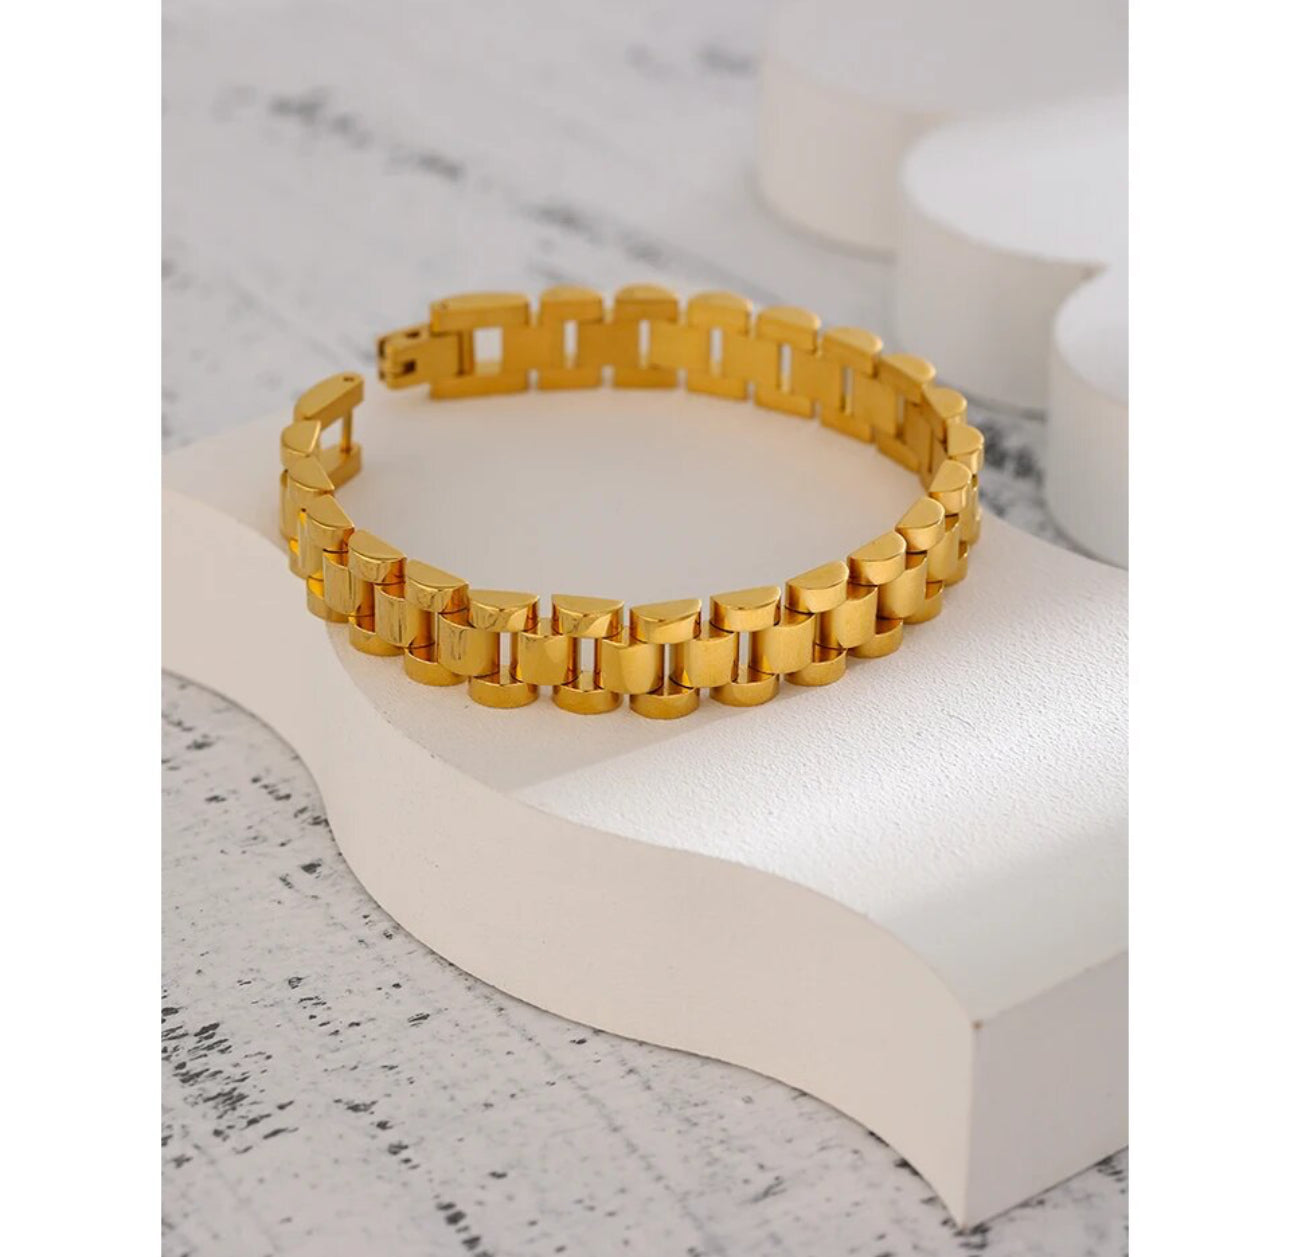 rolly inspired gold bracelet